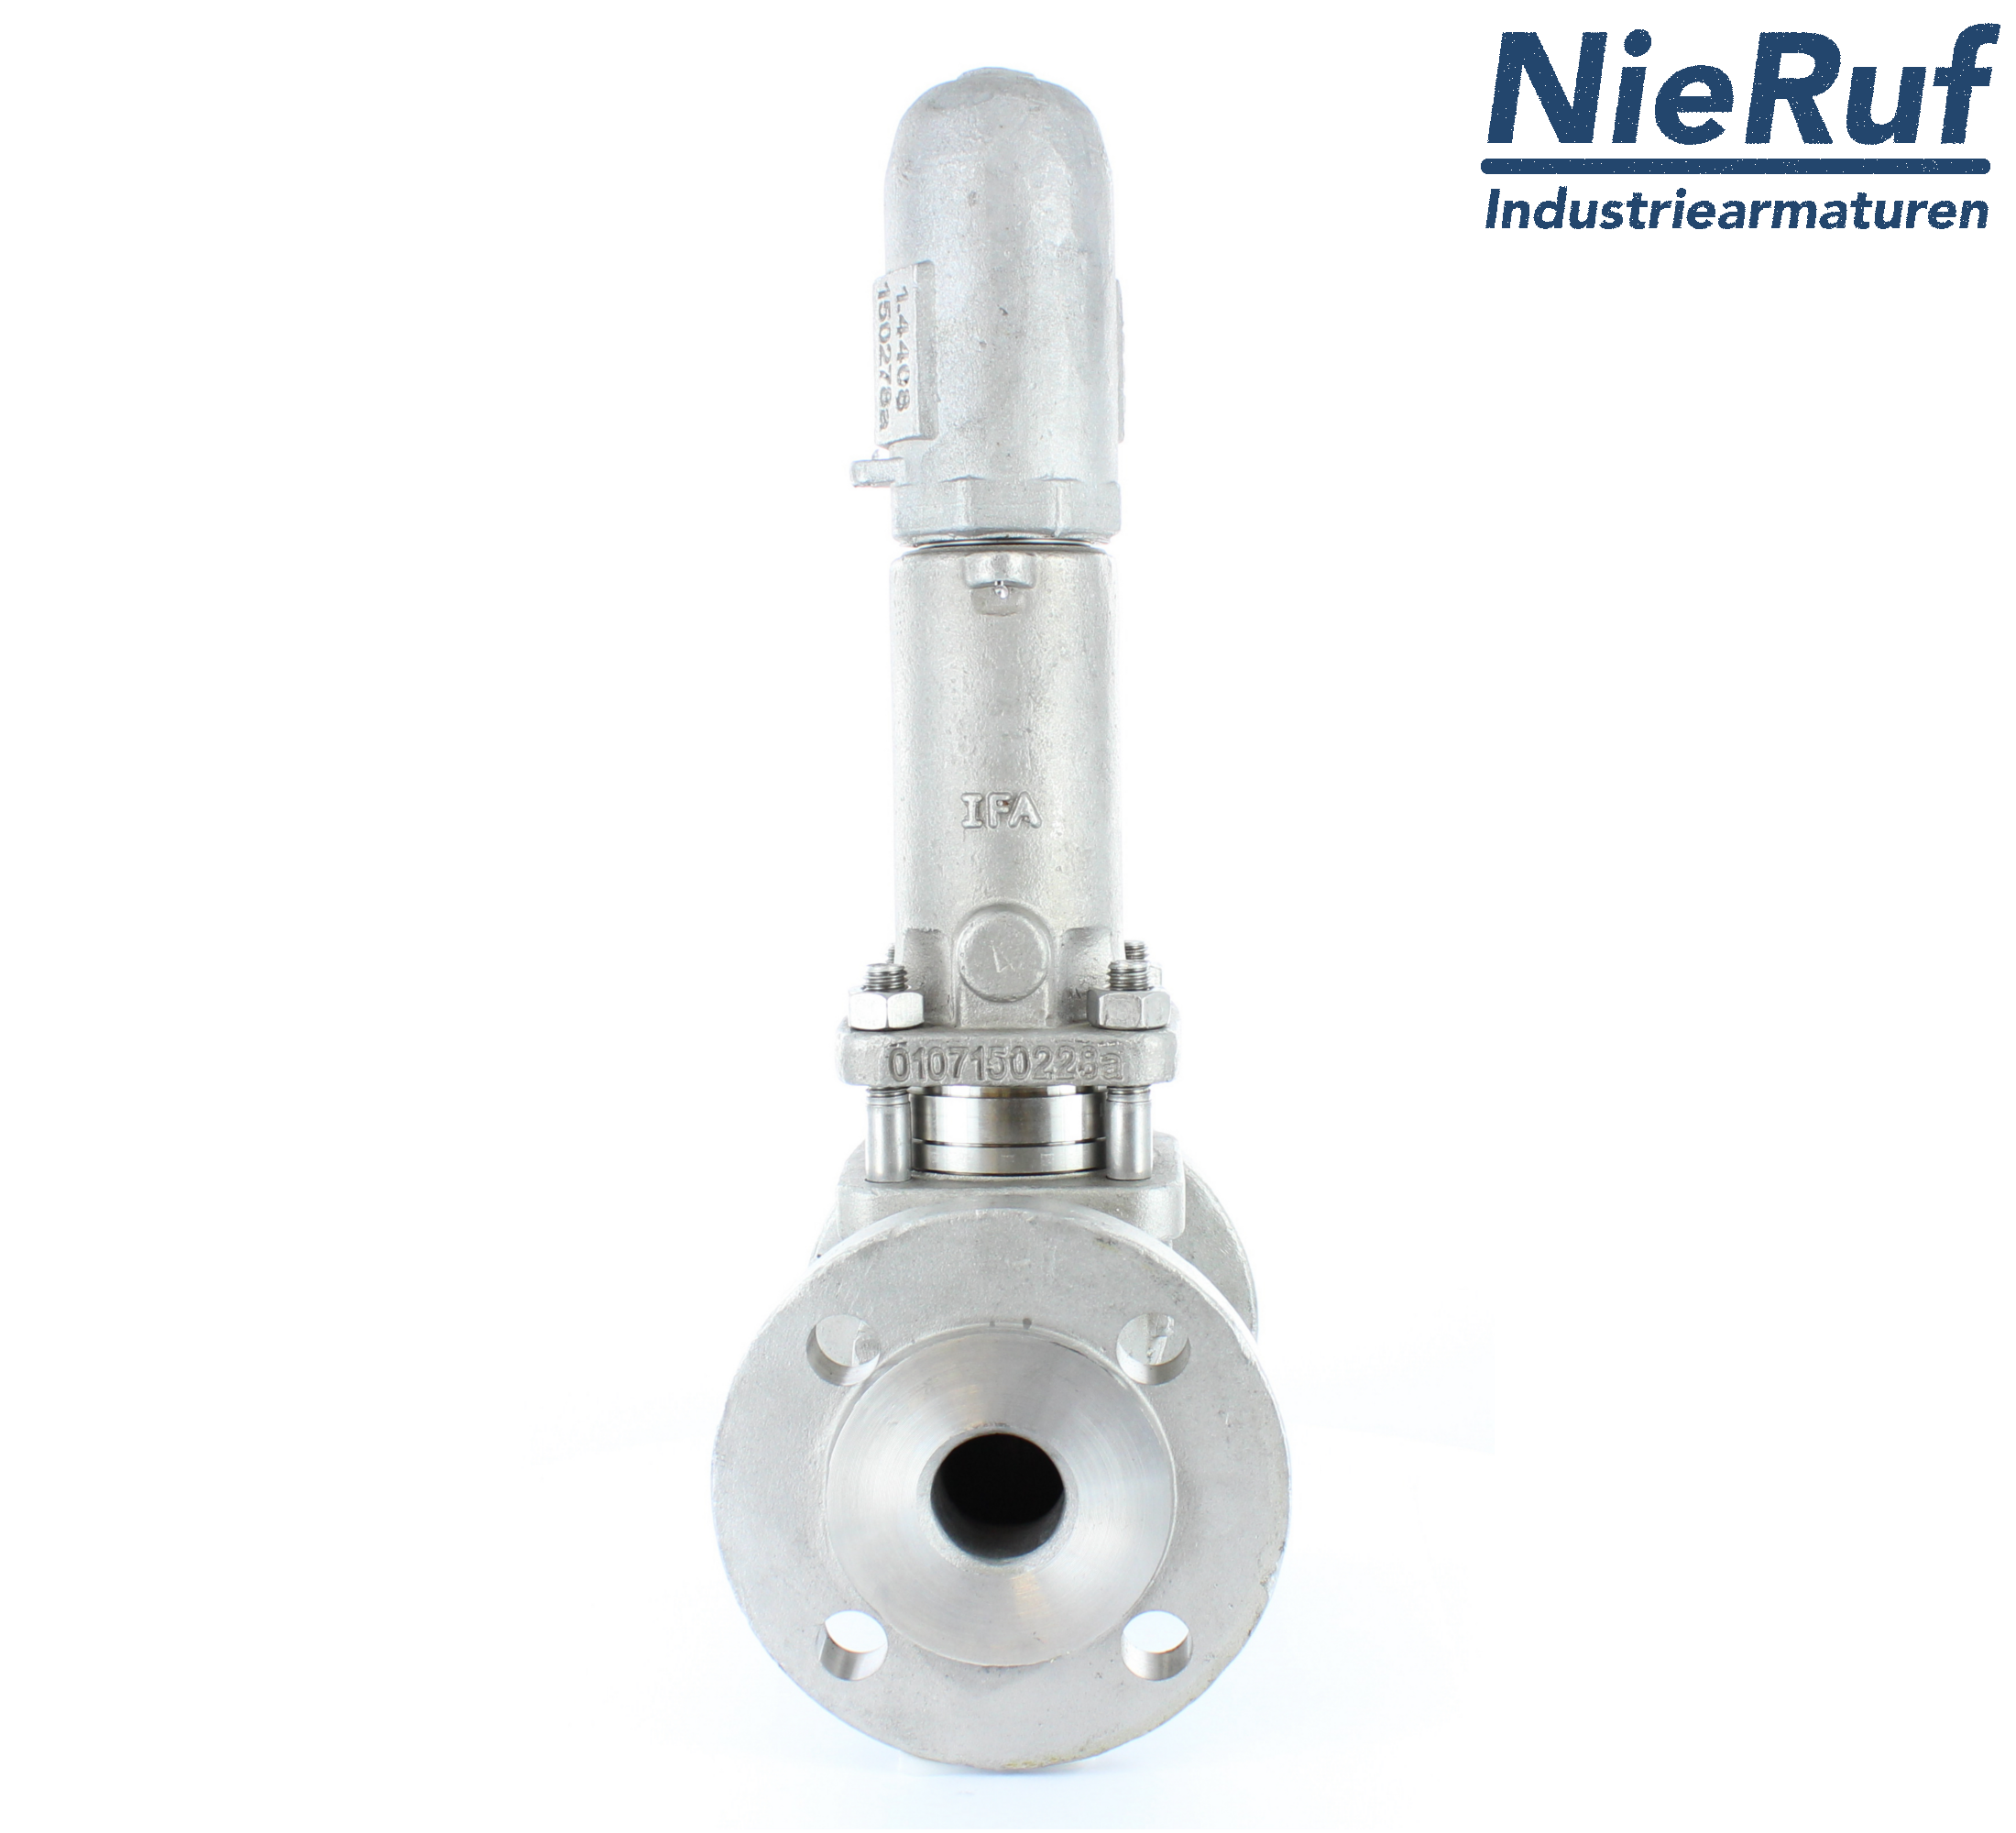 piston overflow valve DN 40 UV13 cast iron 1.0619+N 4,0 - 10,0 bar